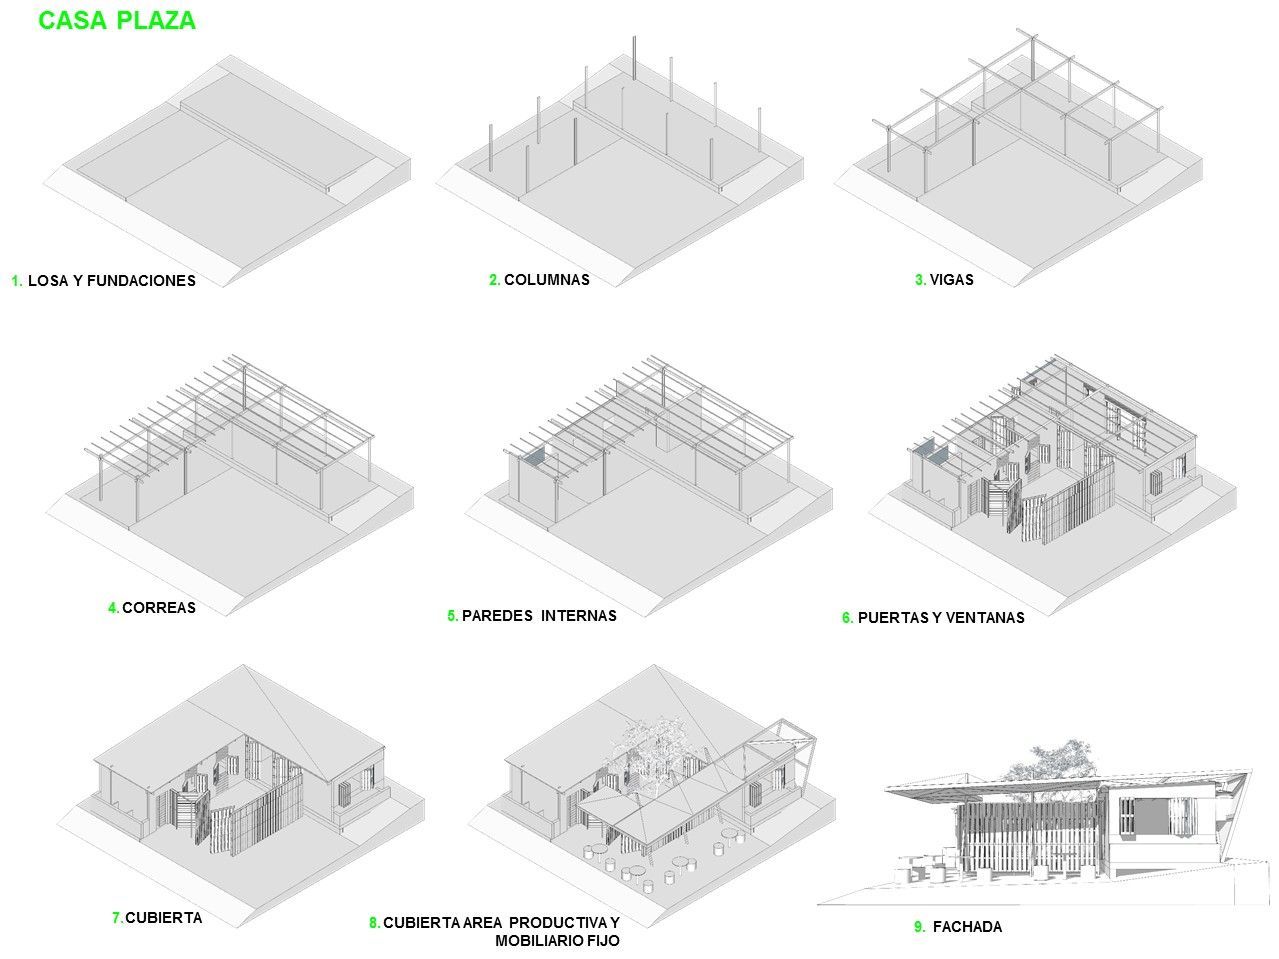 Casa Plaza (Vivienda Barrial Productiva), Taller de Desarrollo Urbano Taller de Desarrollo Urbano 미니멀리스트 주택